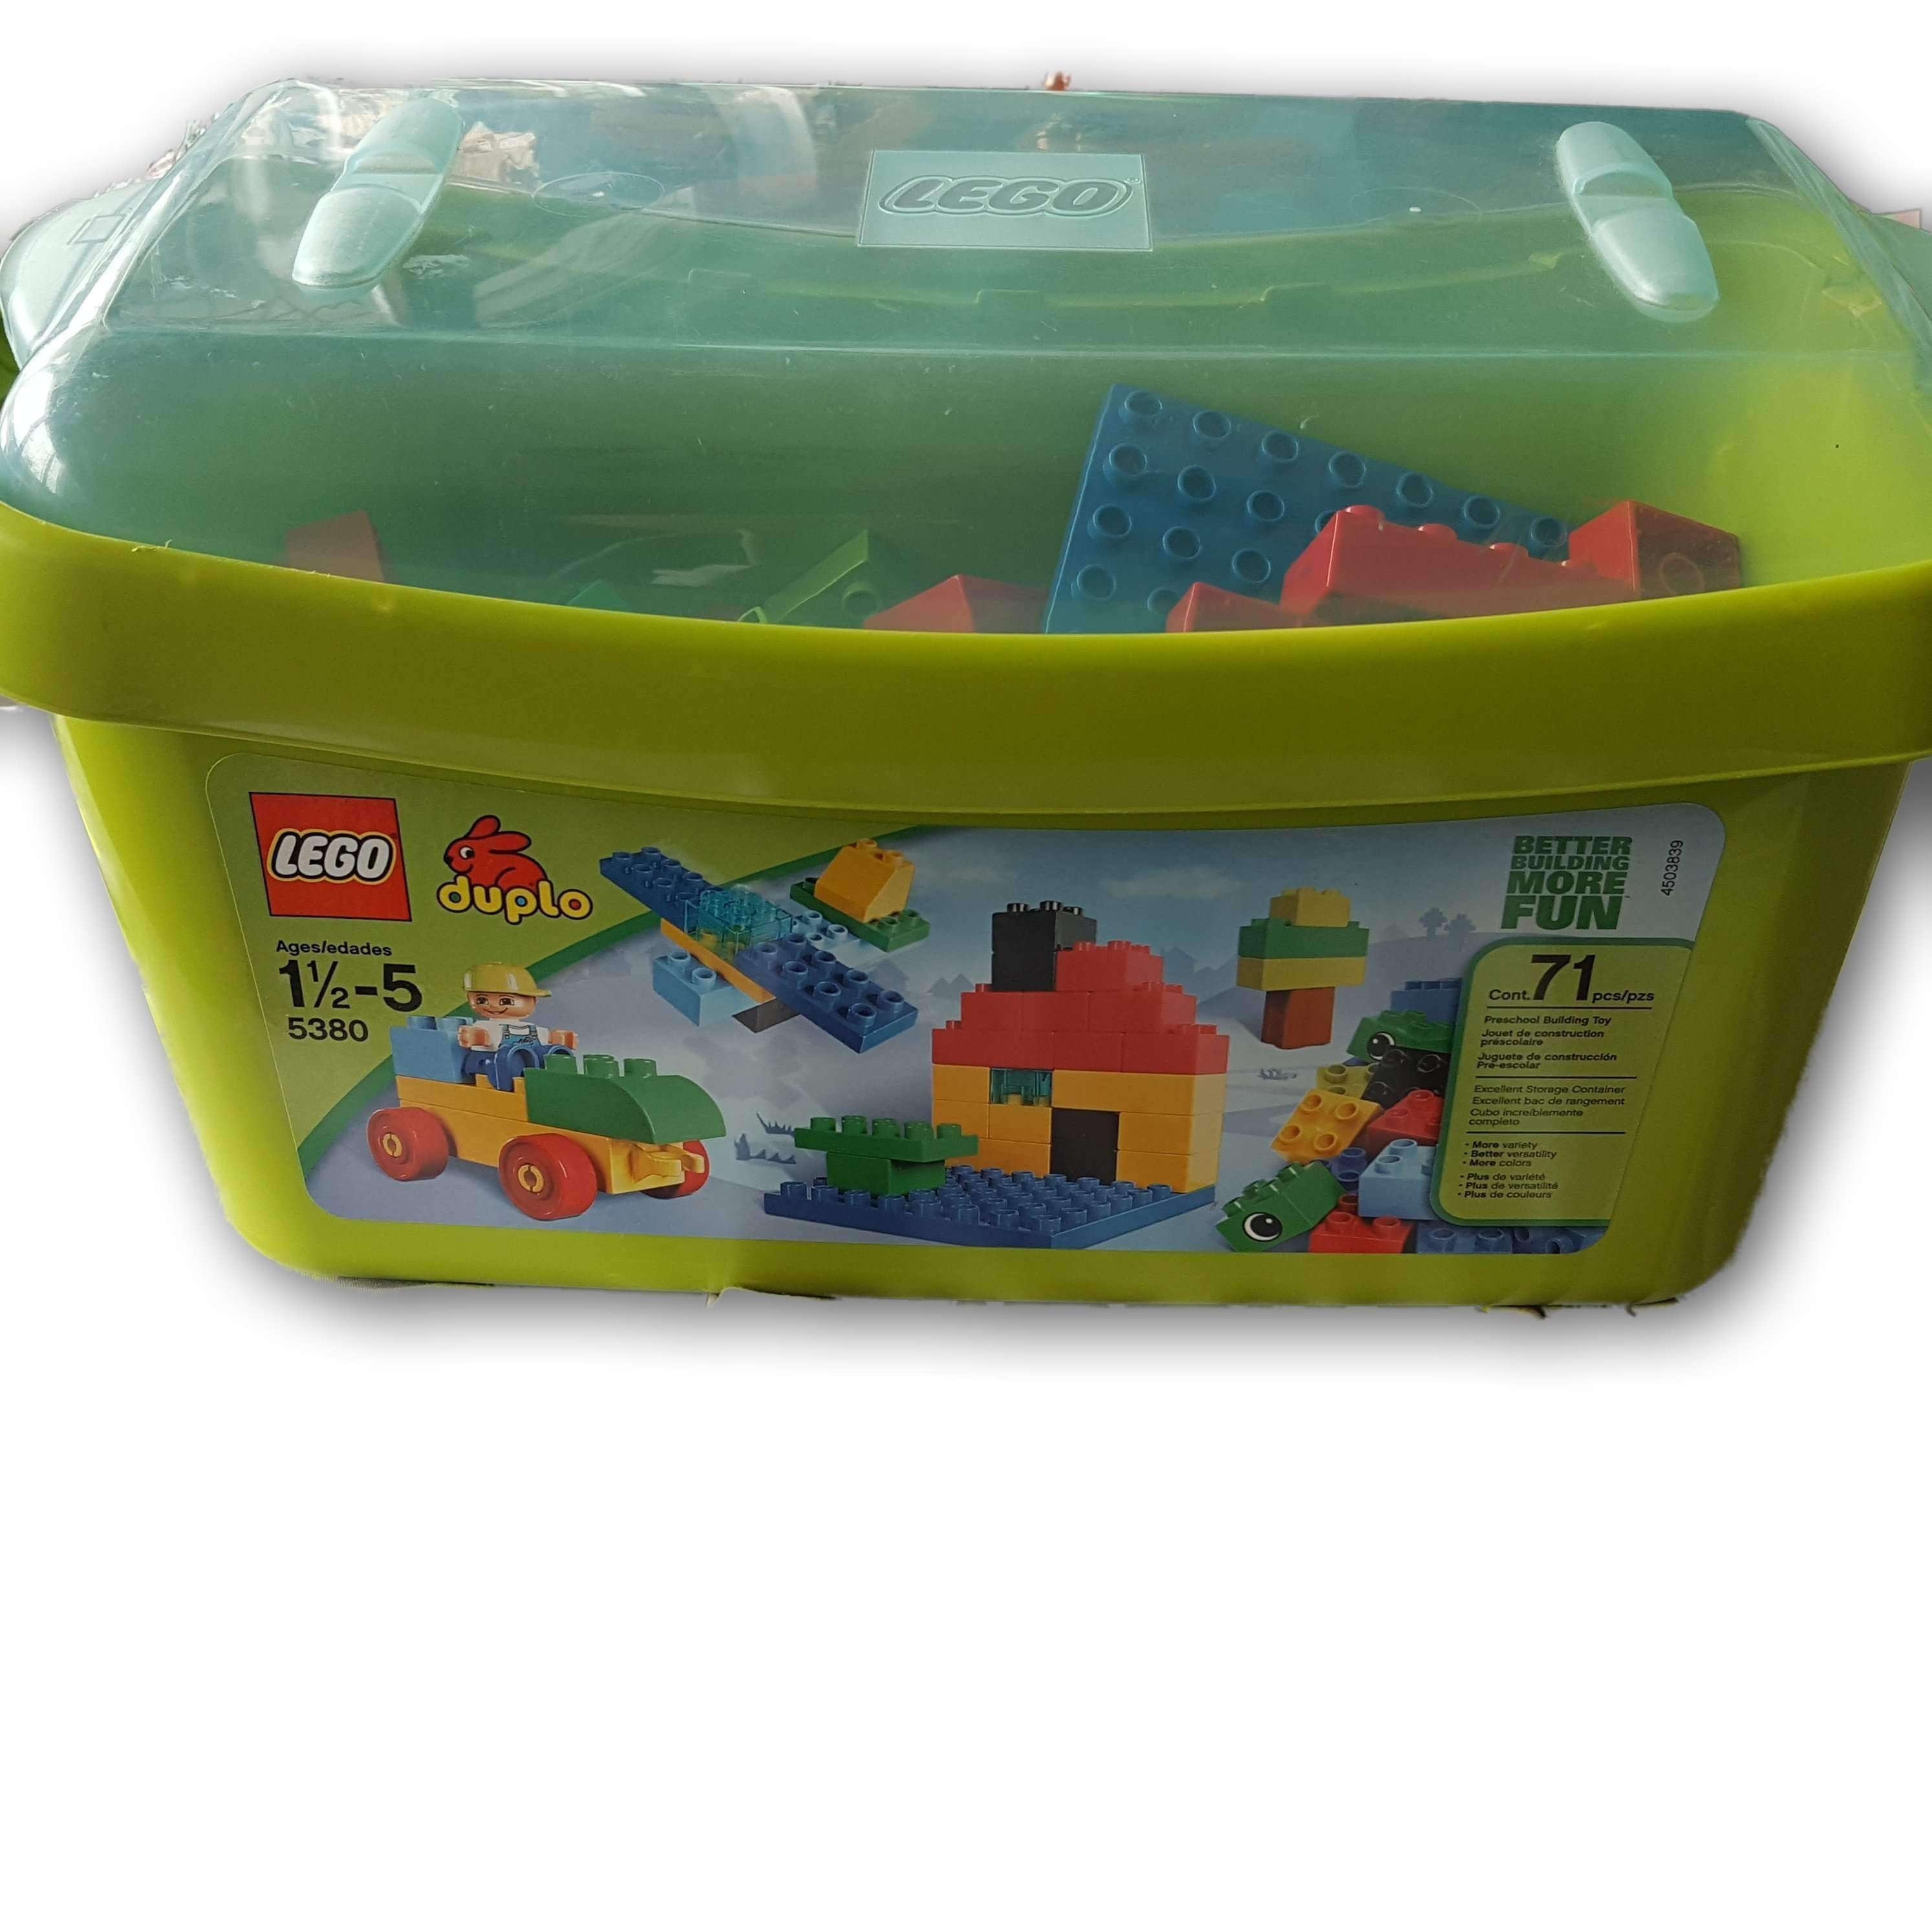 Lego Duplo Building Set 71 Pieces (5380) – Chest